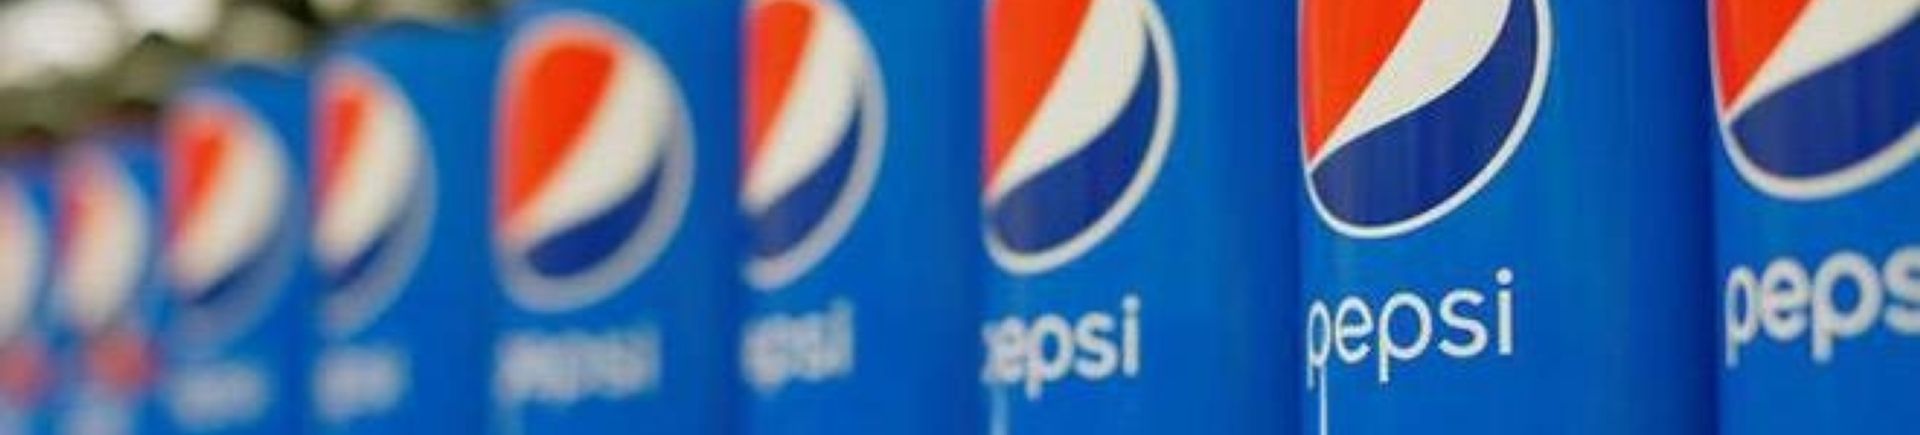 PepsiCo India